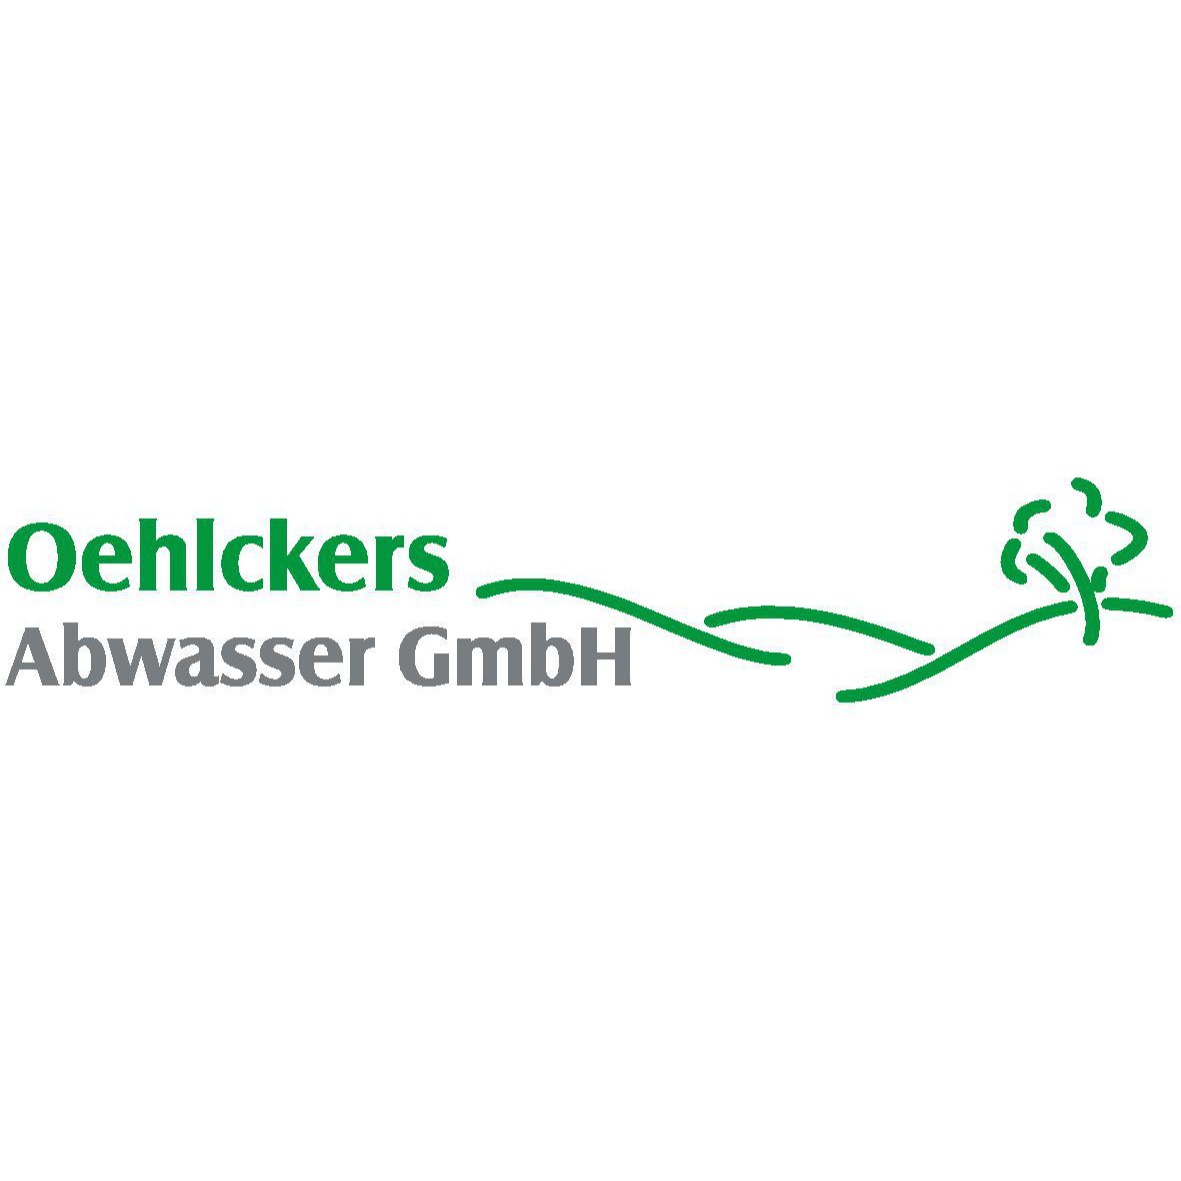 Oehlckers Abwasser GmbH Logo